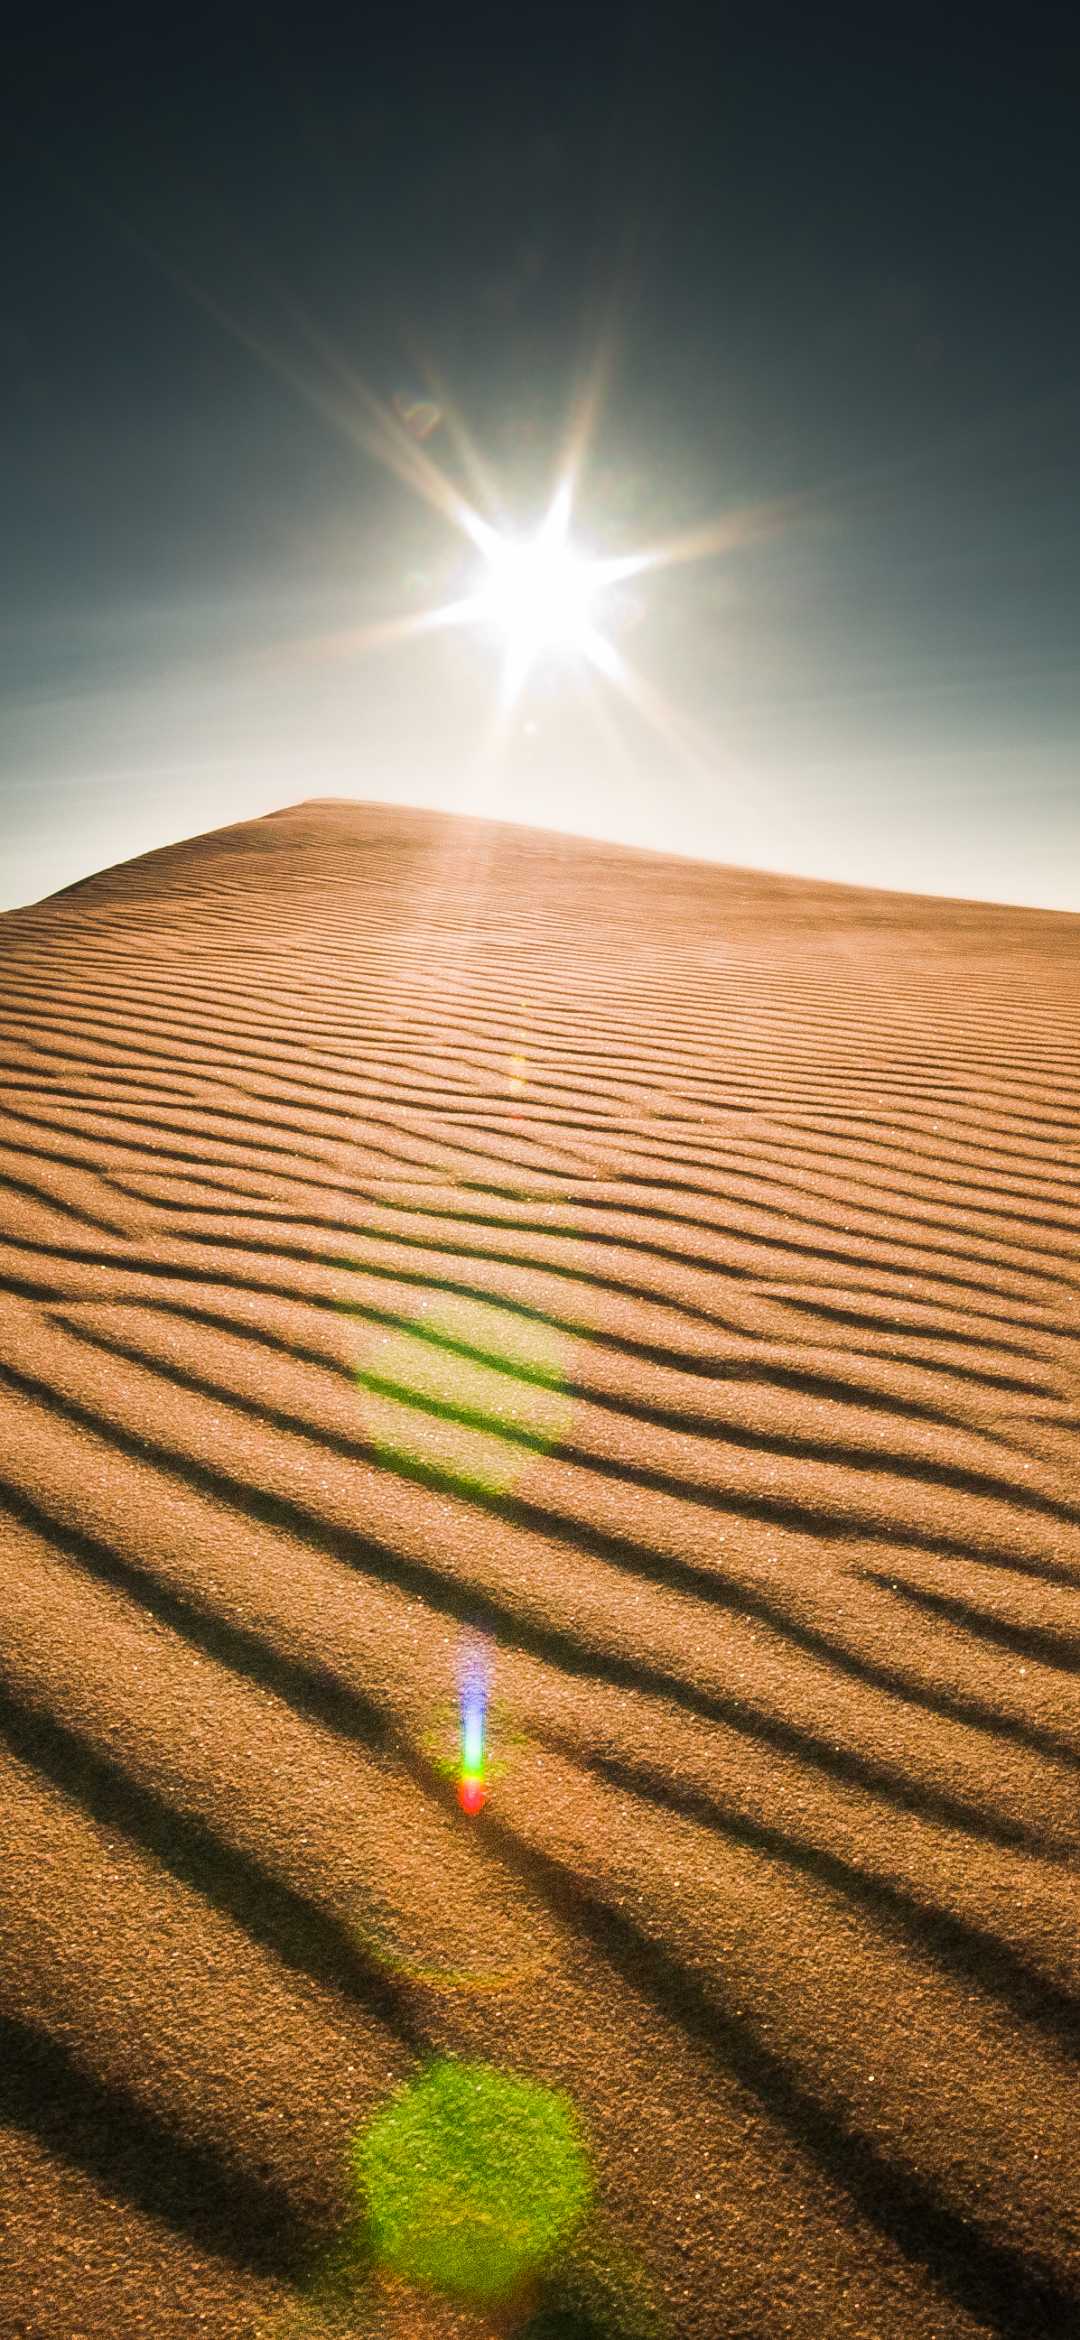 Скачать картинку Солнце, Песок, Пустыня, Дюна, Орегон, Земля/природа в телефон бесплатно.